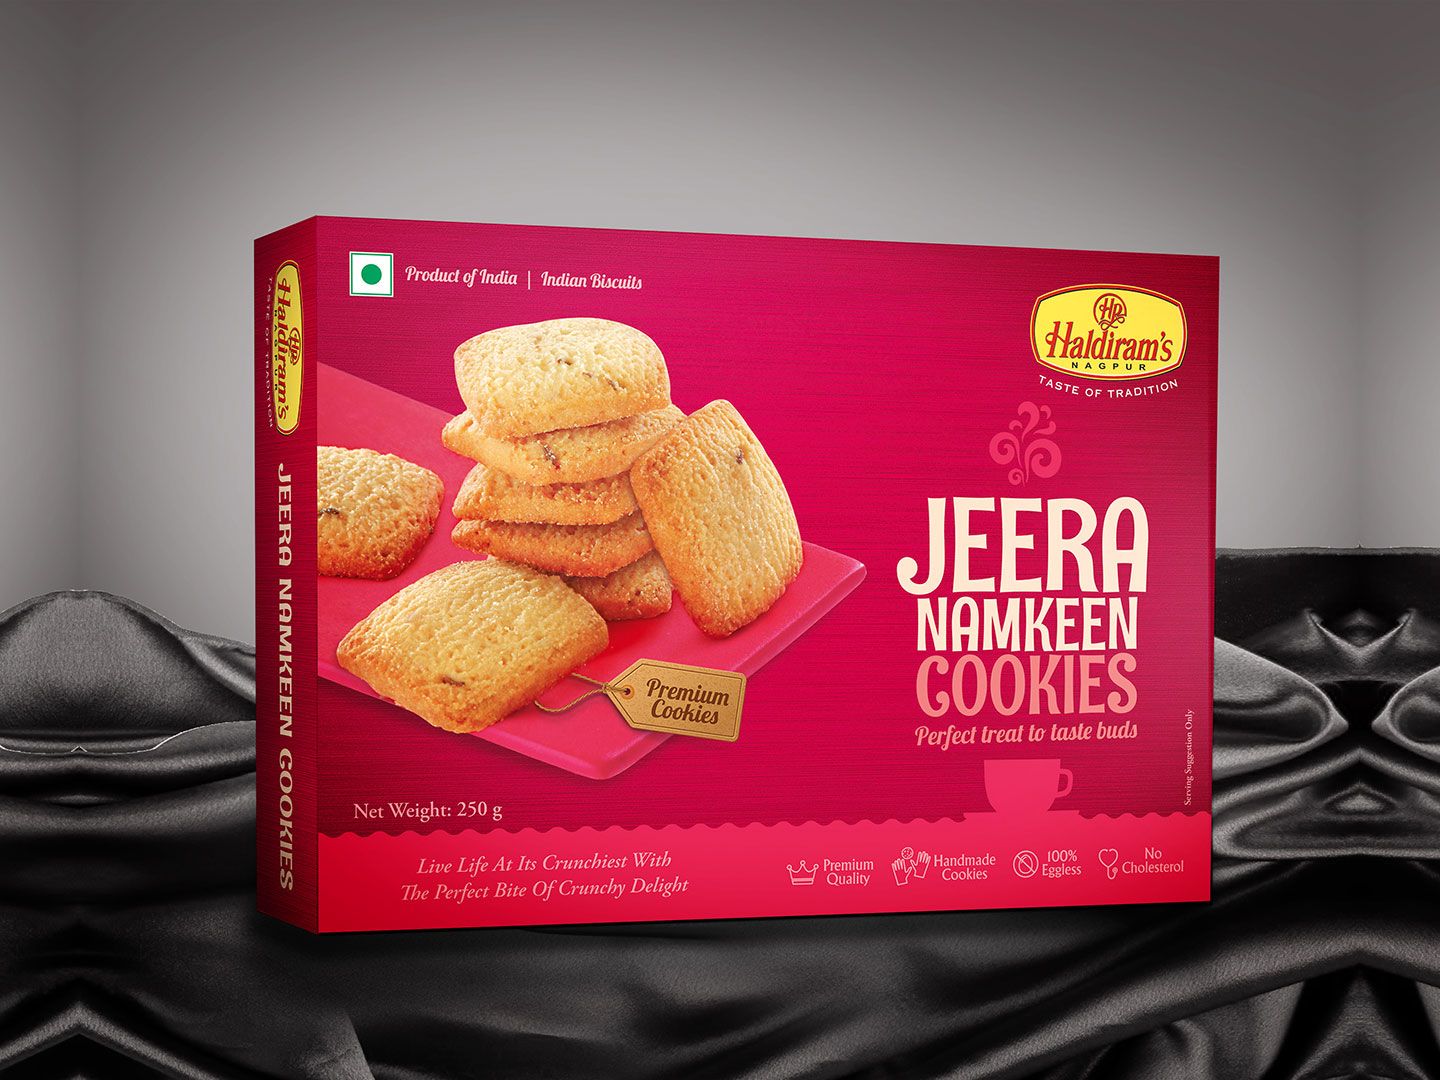 Cookies Packaging Design Agency | Biscuits packaging, Cookie packaging